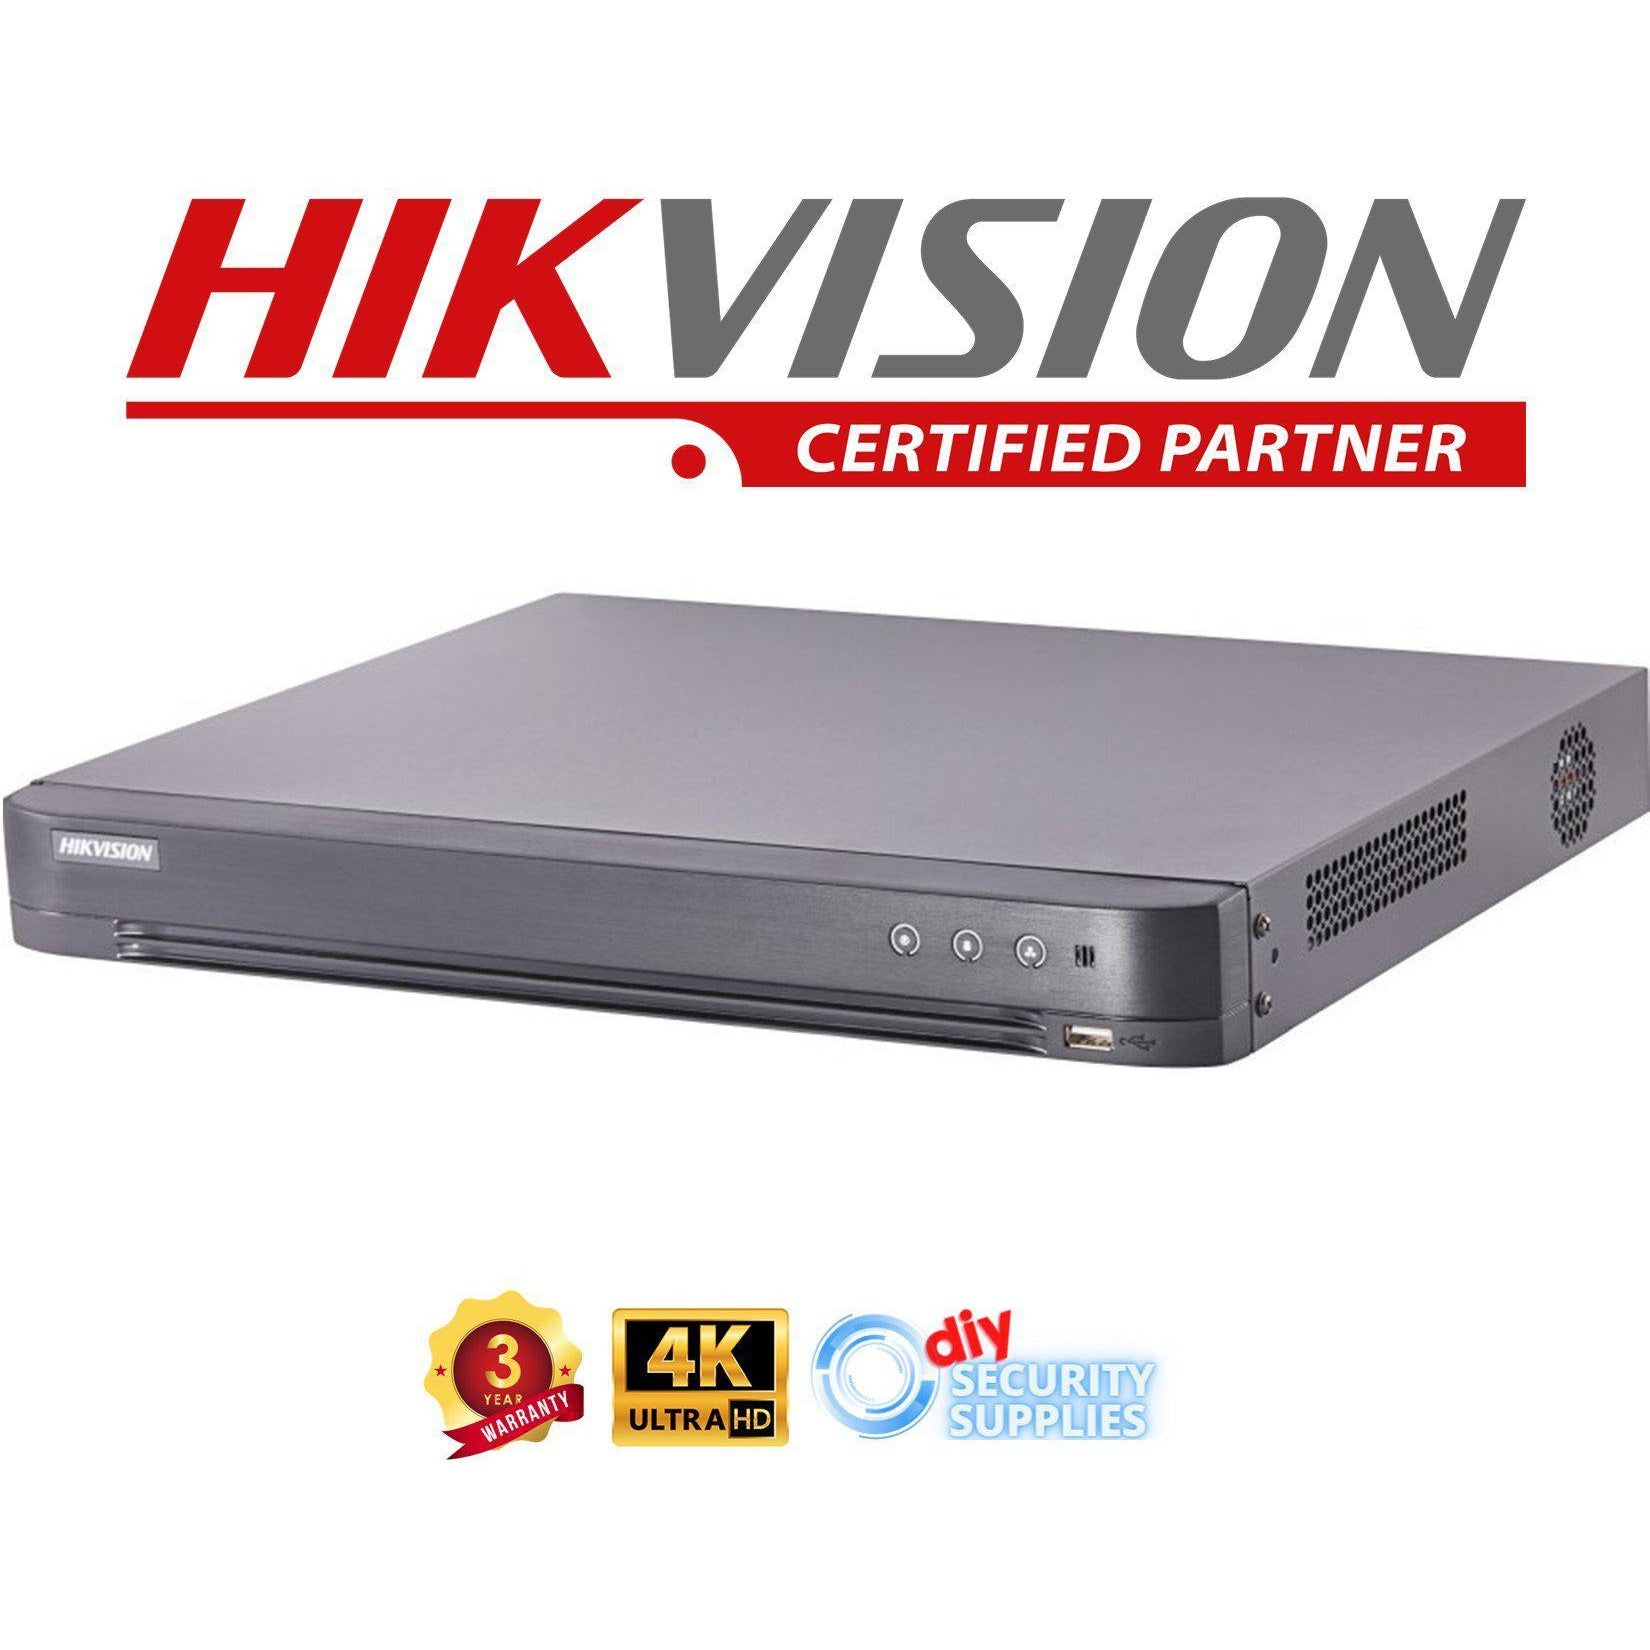 Hikvision DVR 8 Channel